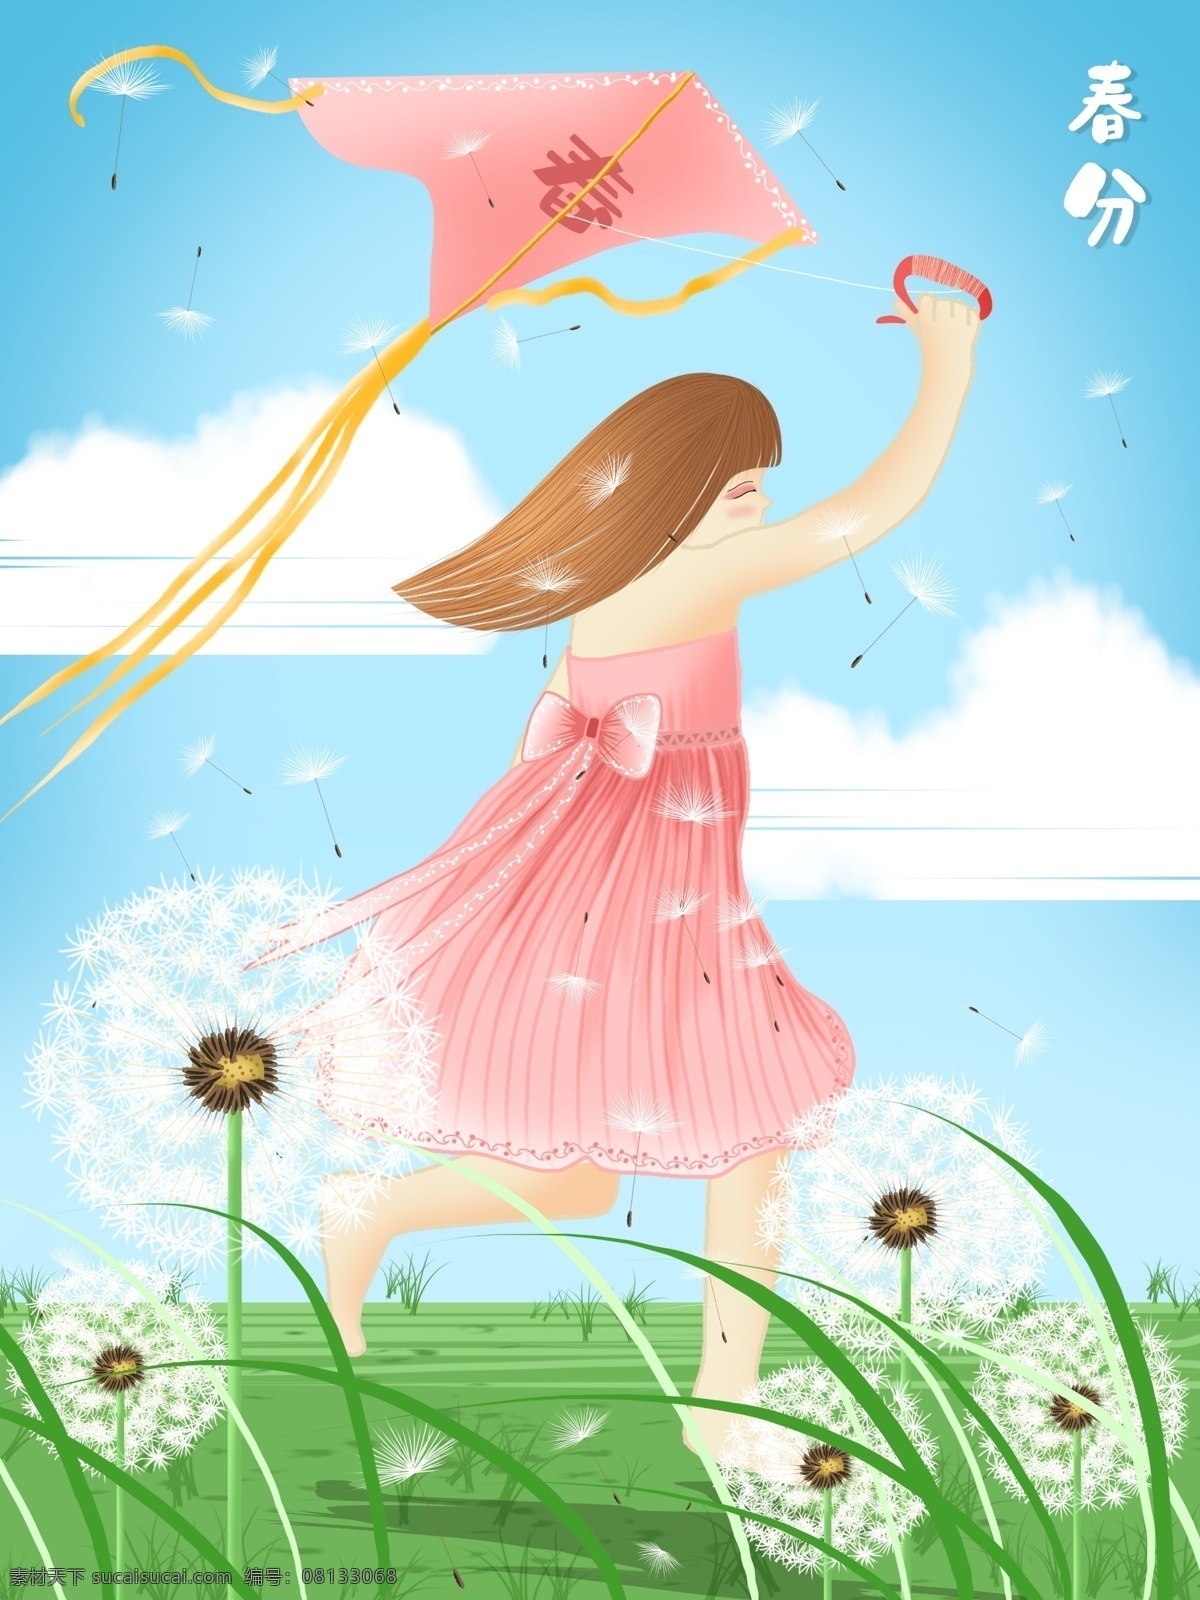 放风筝 小女孩 二十四节气 之春 分 插画 草 云 天空 草地 手绘 风筝 女孩 蒲公英 春分